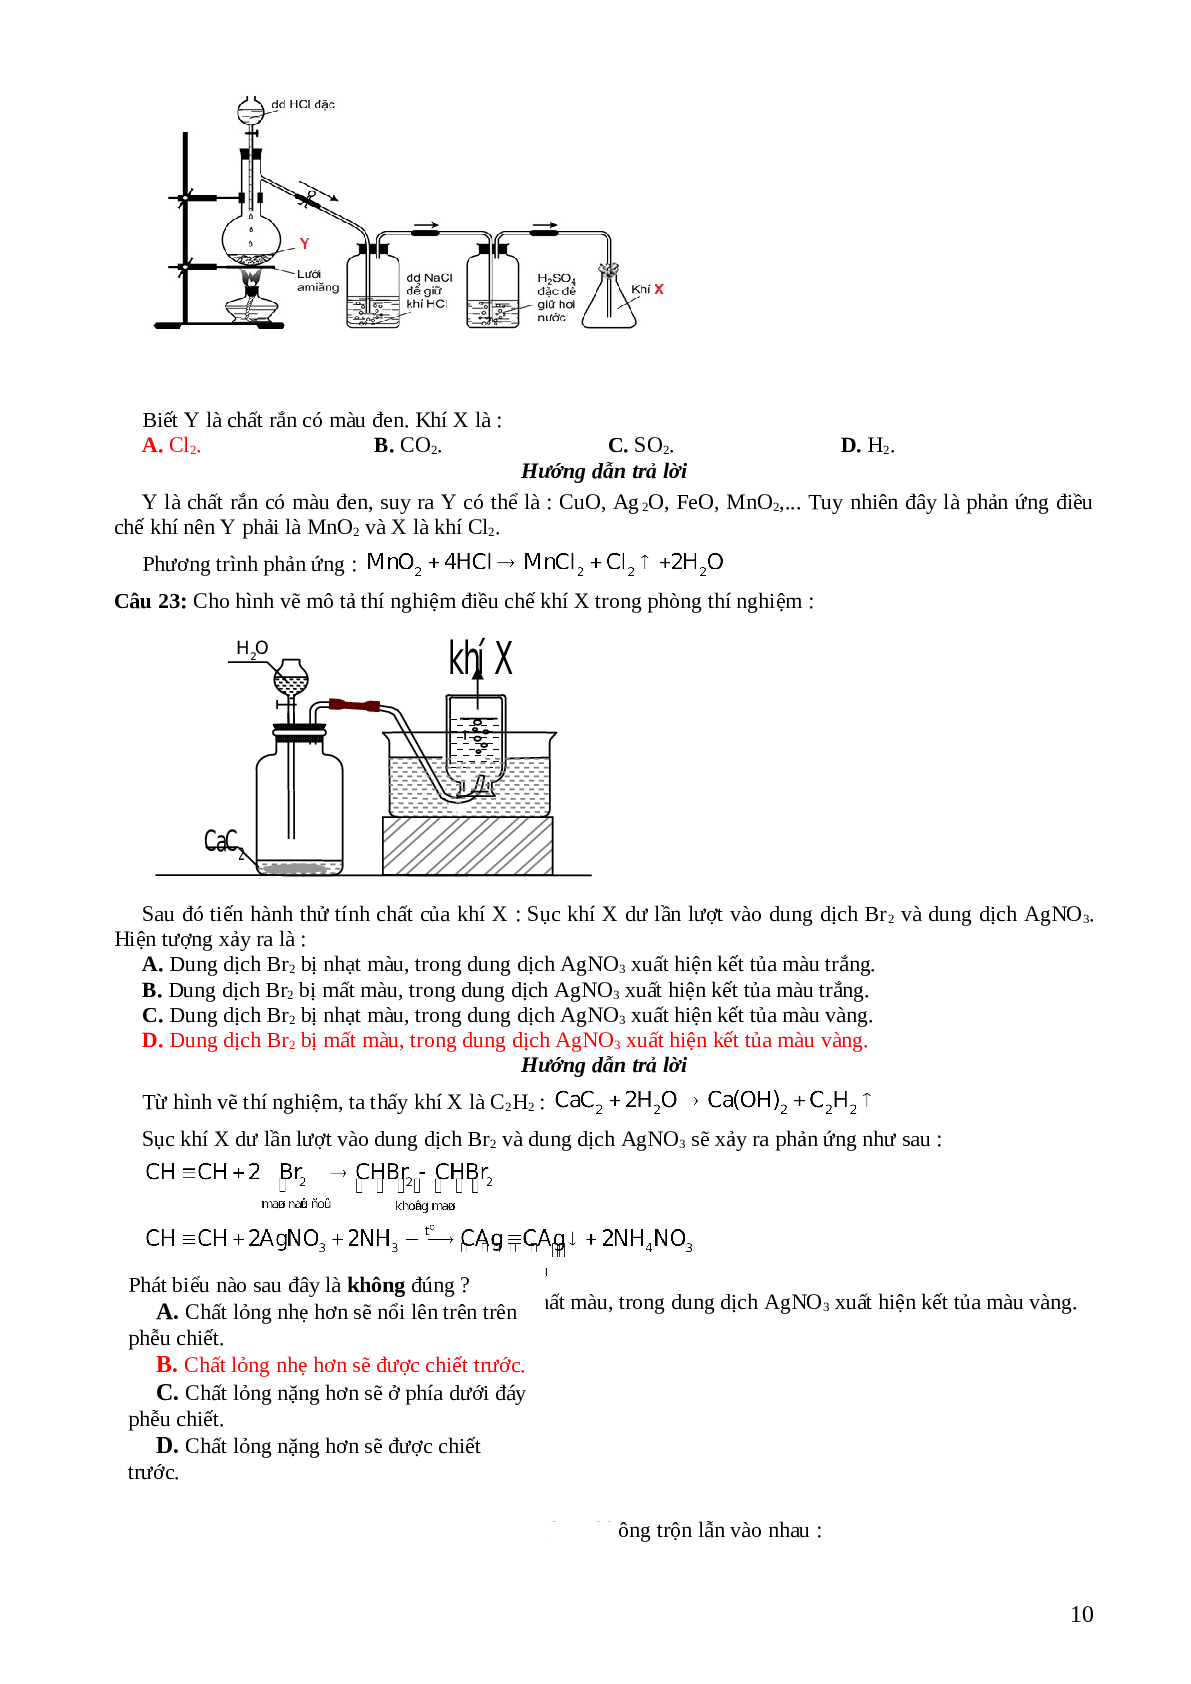 33 câu trắc nghiệm về hình  vẽ thí nghiệm hóa học lớp 12 có đáp án 2023 (trang 10)